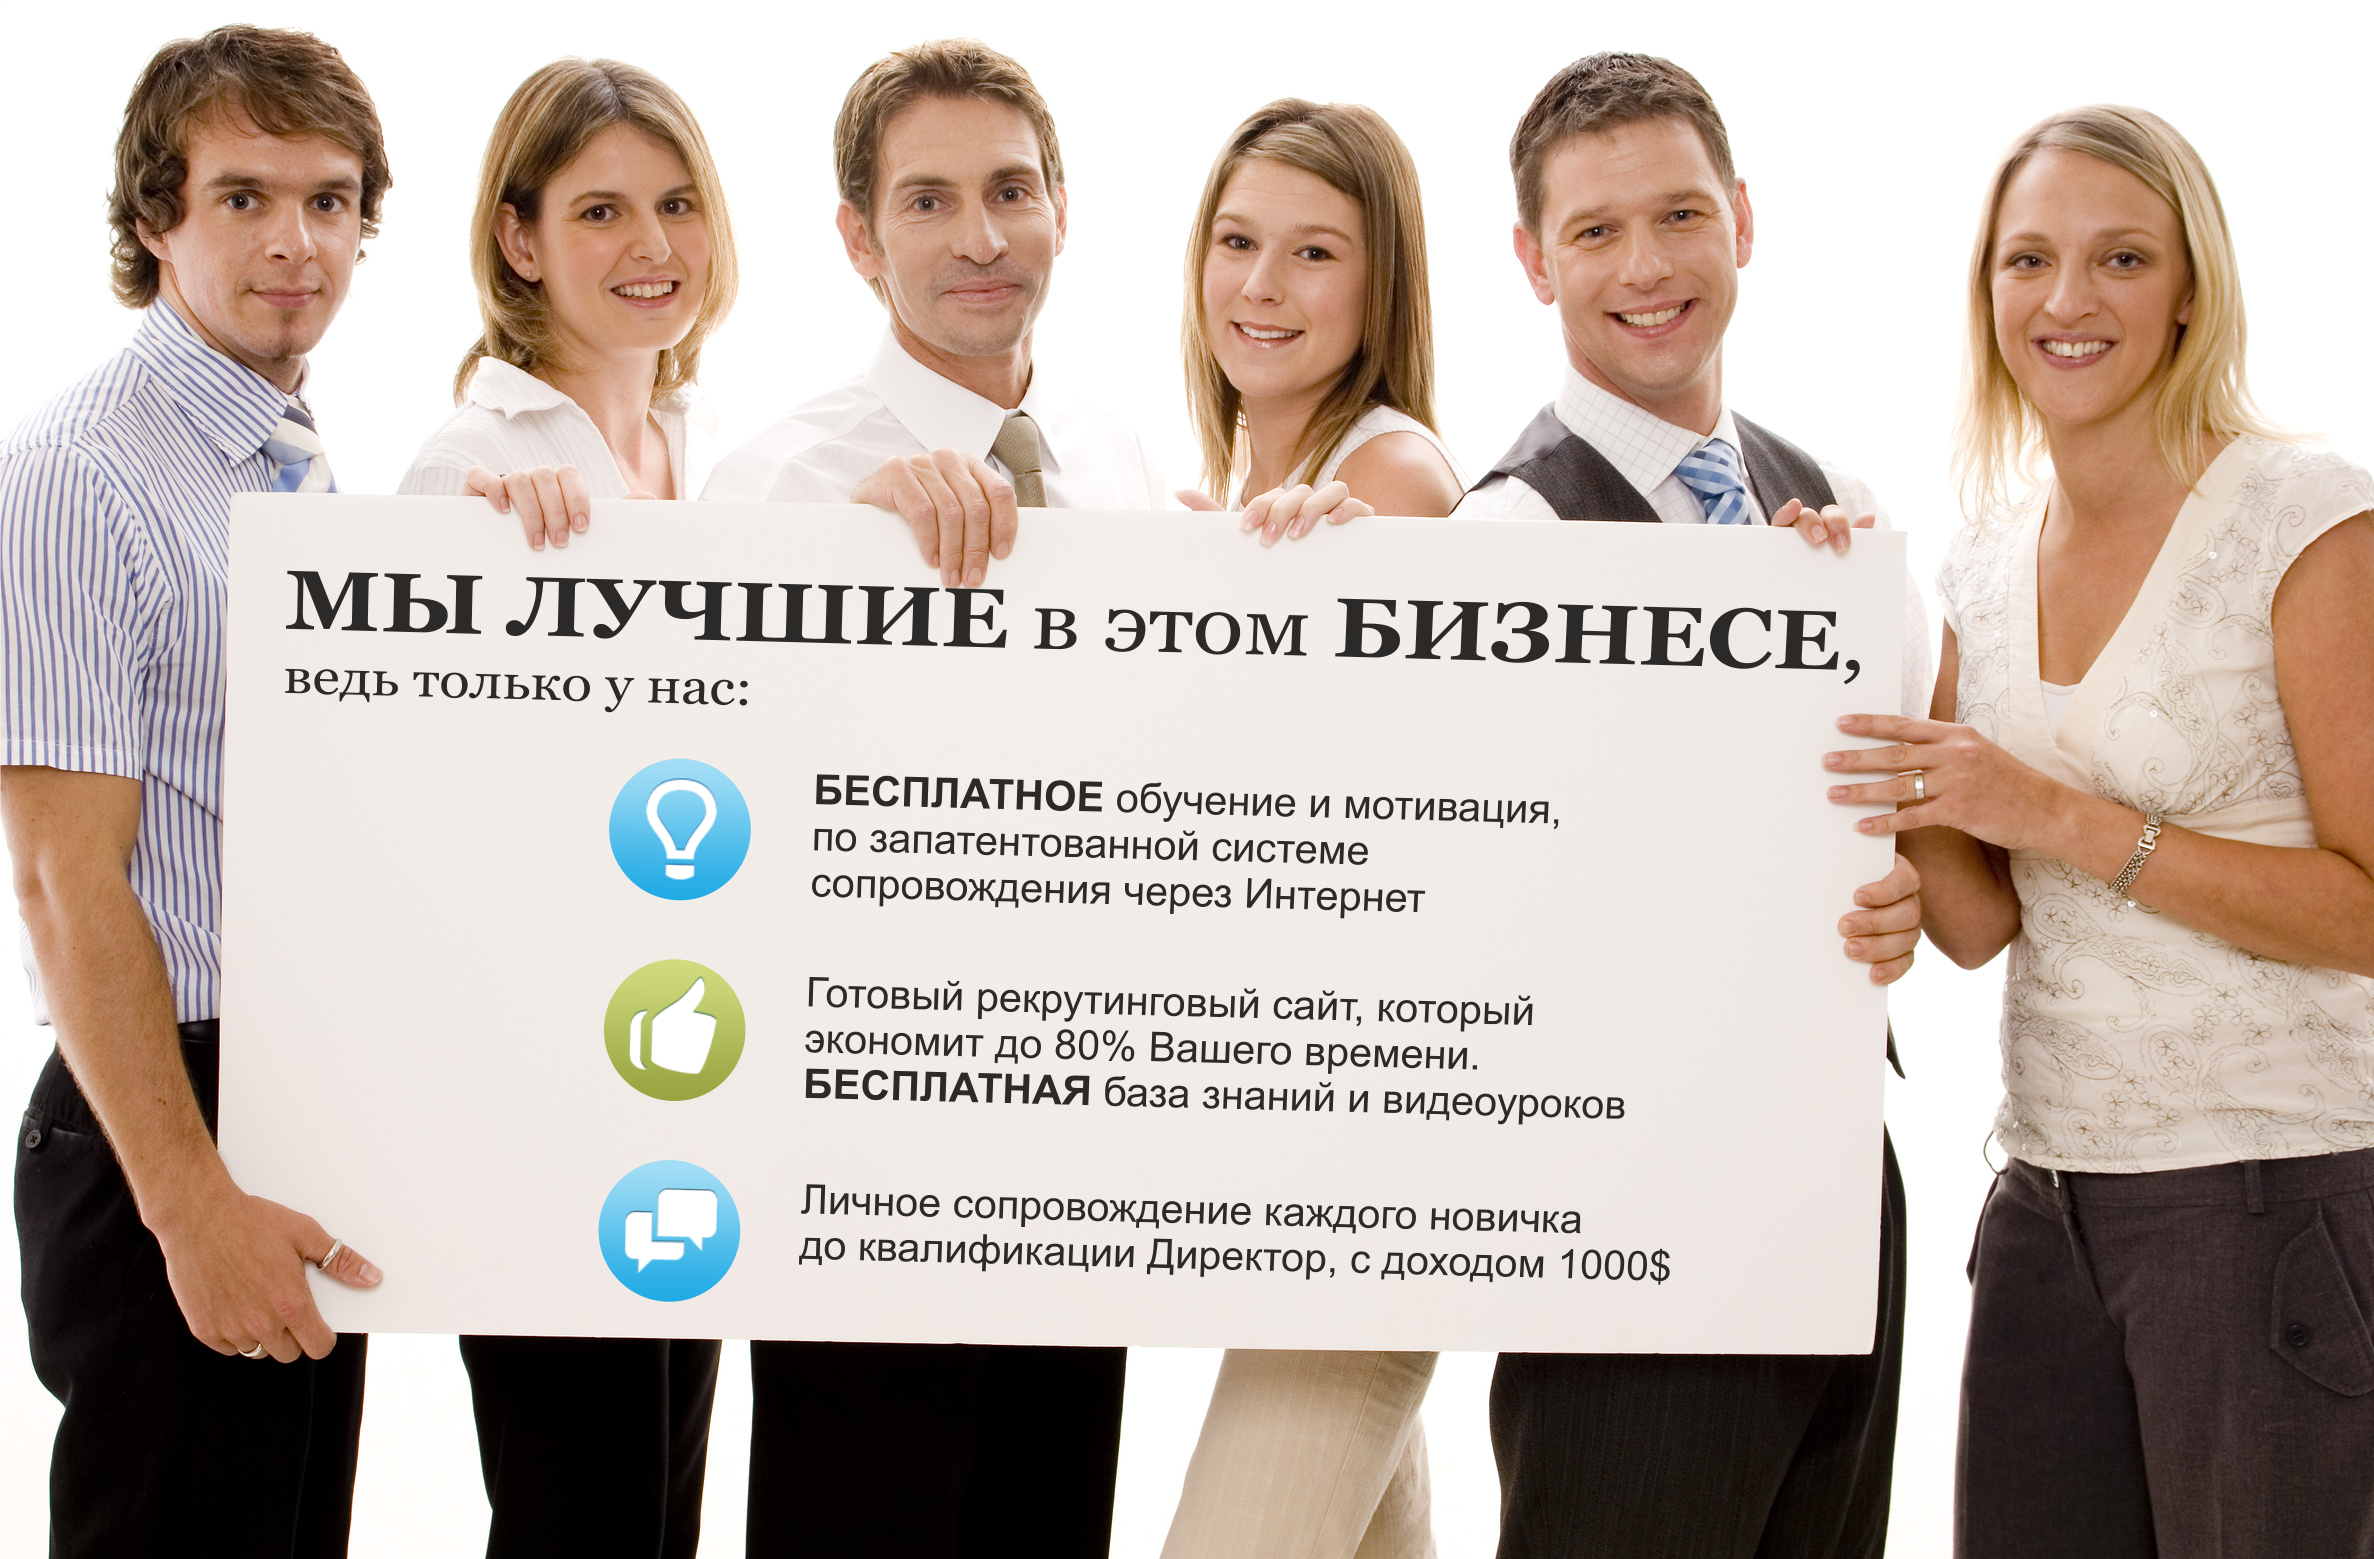 Какой в москве есть интернет. Набираю команду для бизнеса. Бизнес в интернете. Картинки бизнес в интернете.